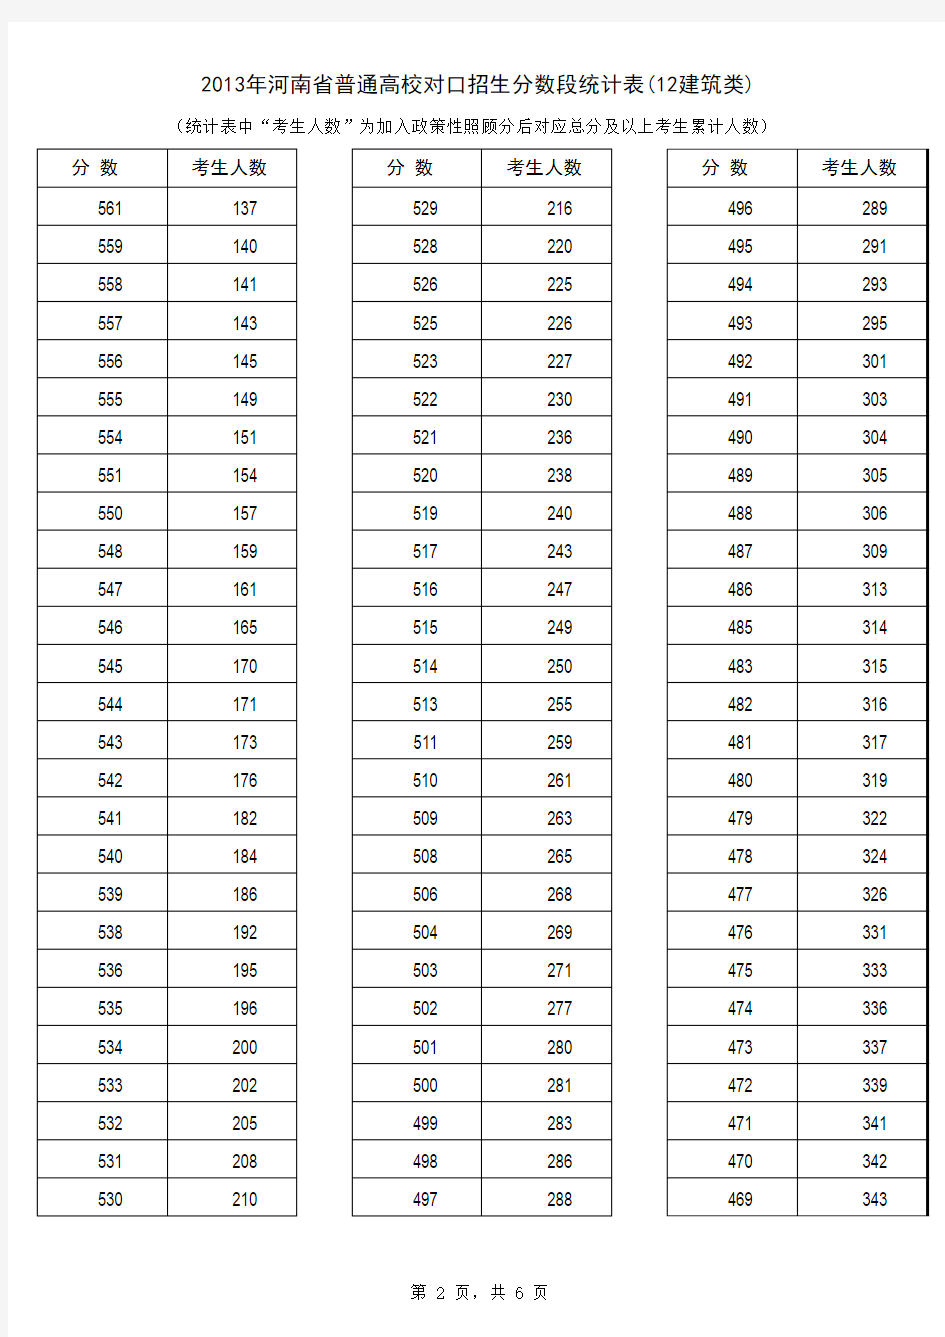 2013年河南省普通高校对口招生分数段统计表建筑类) (1)